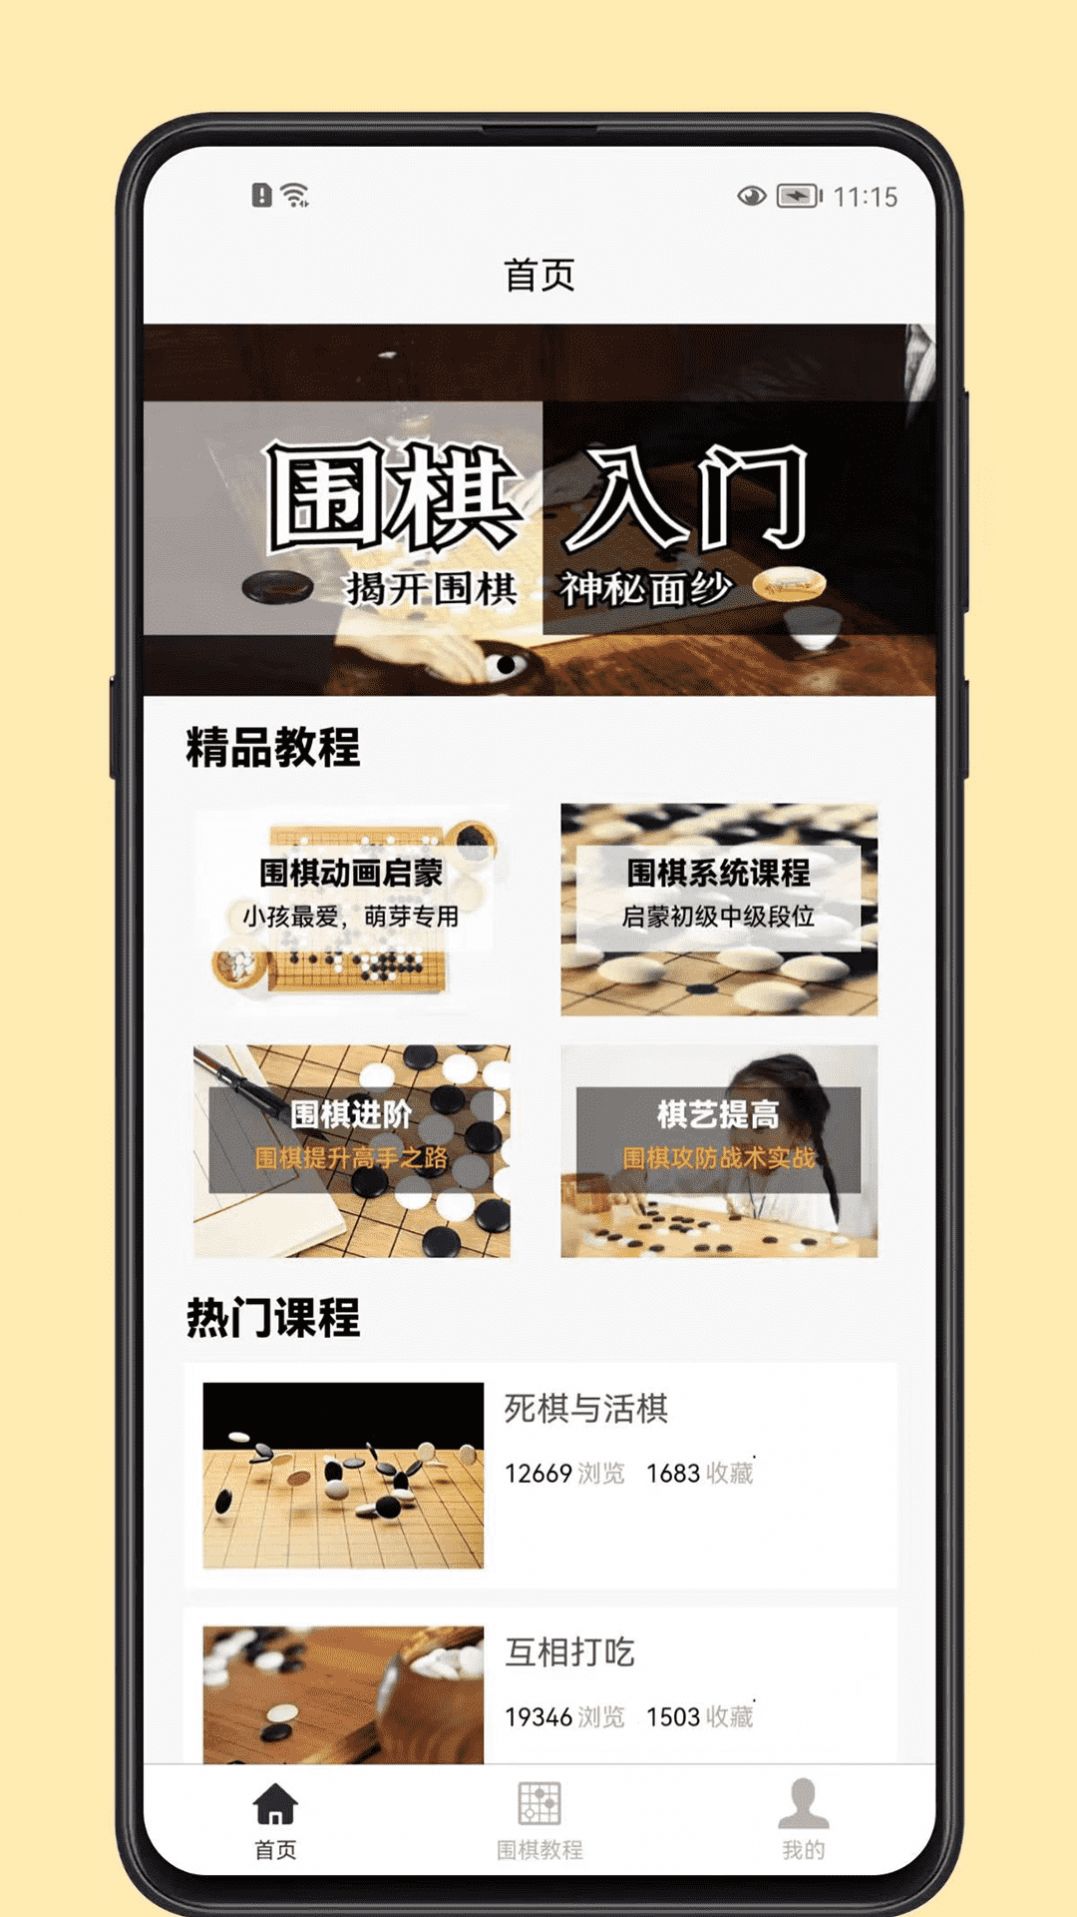 围棋学习宝典app软件手机版图片1